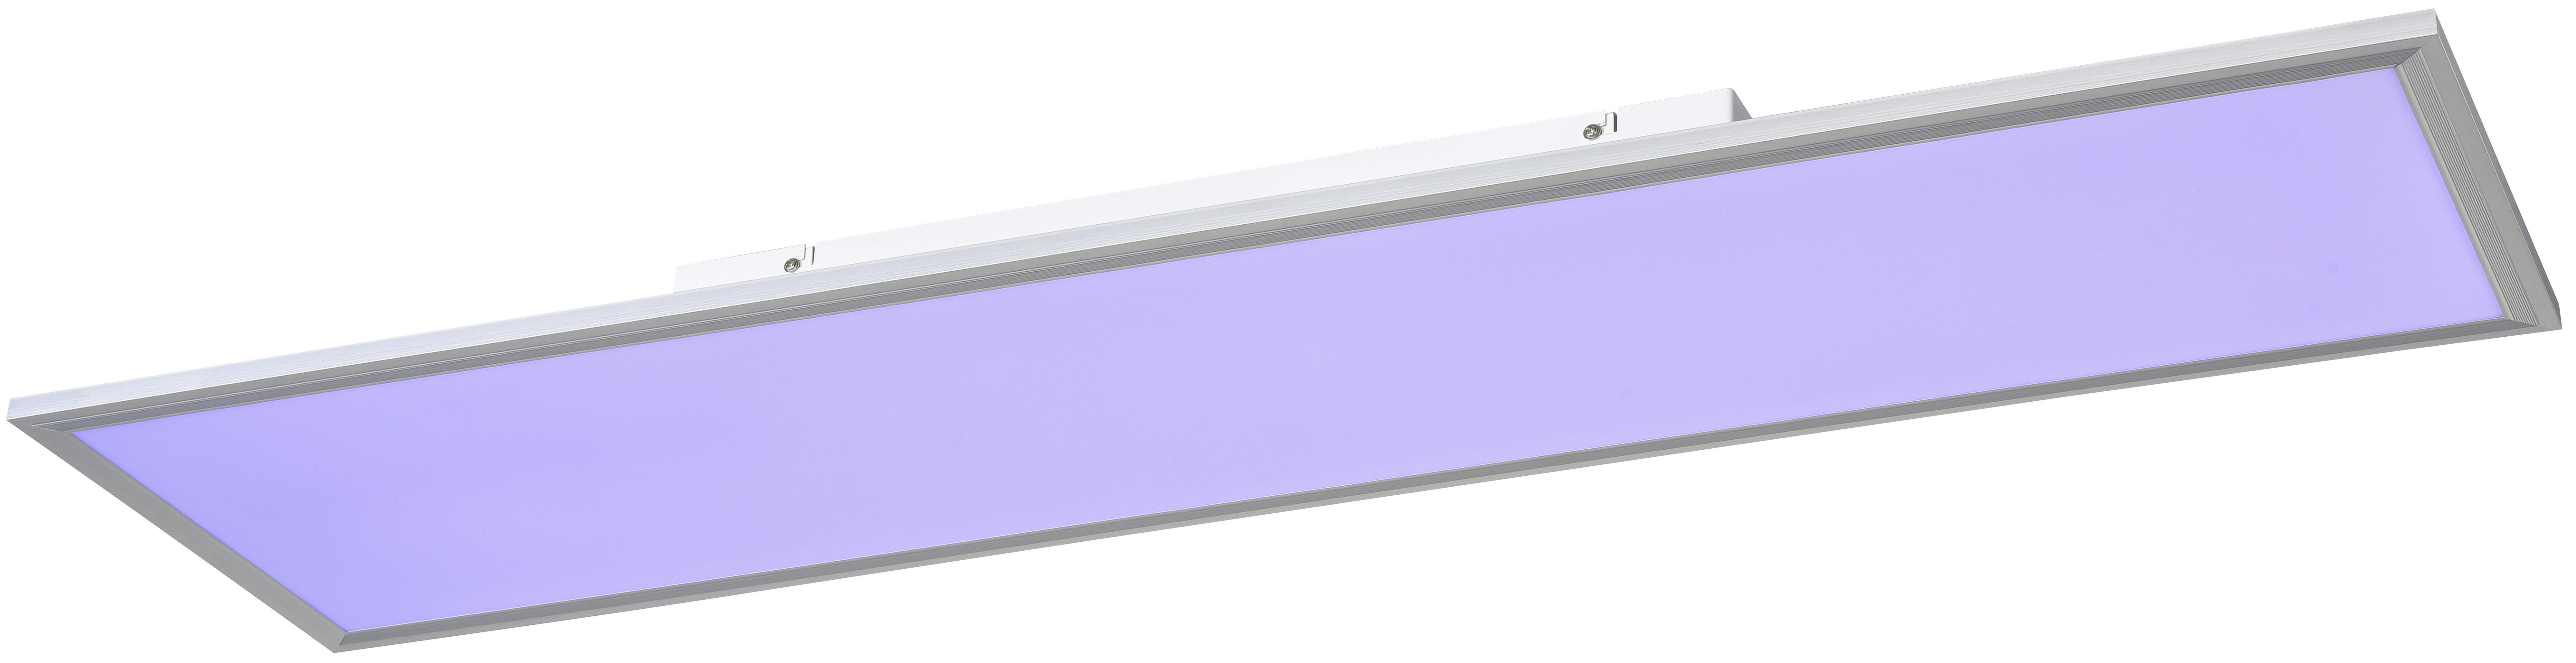 LED-Deckenleuchte Ulla L: 120 cm mit Farbwechsler - Silberfarben/Weiß, MODERN, Kunststoff/Metall (30/120/7,5cm) - Luca Bessoni